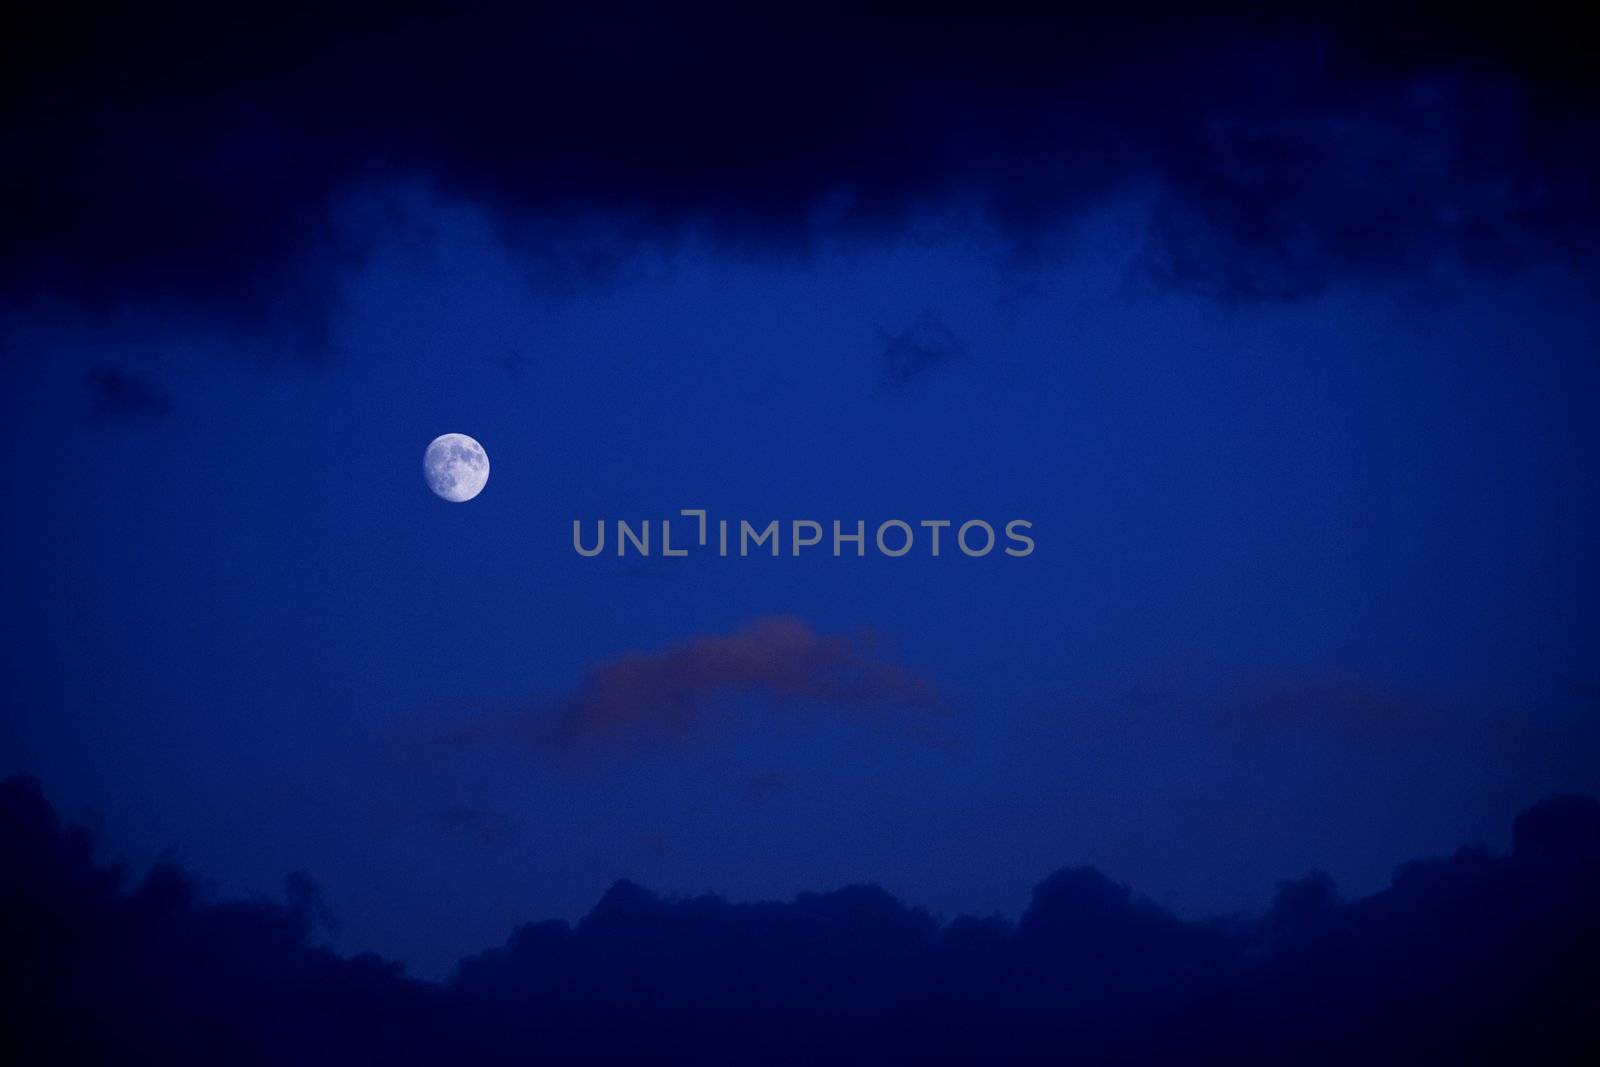 Moon by stefan_andronache